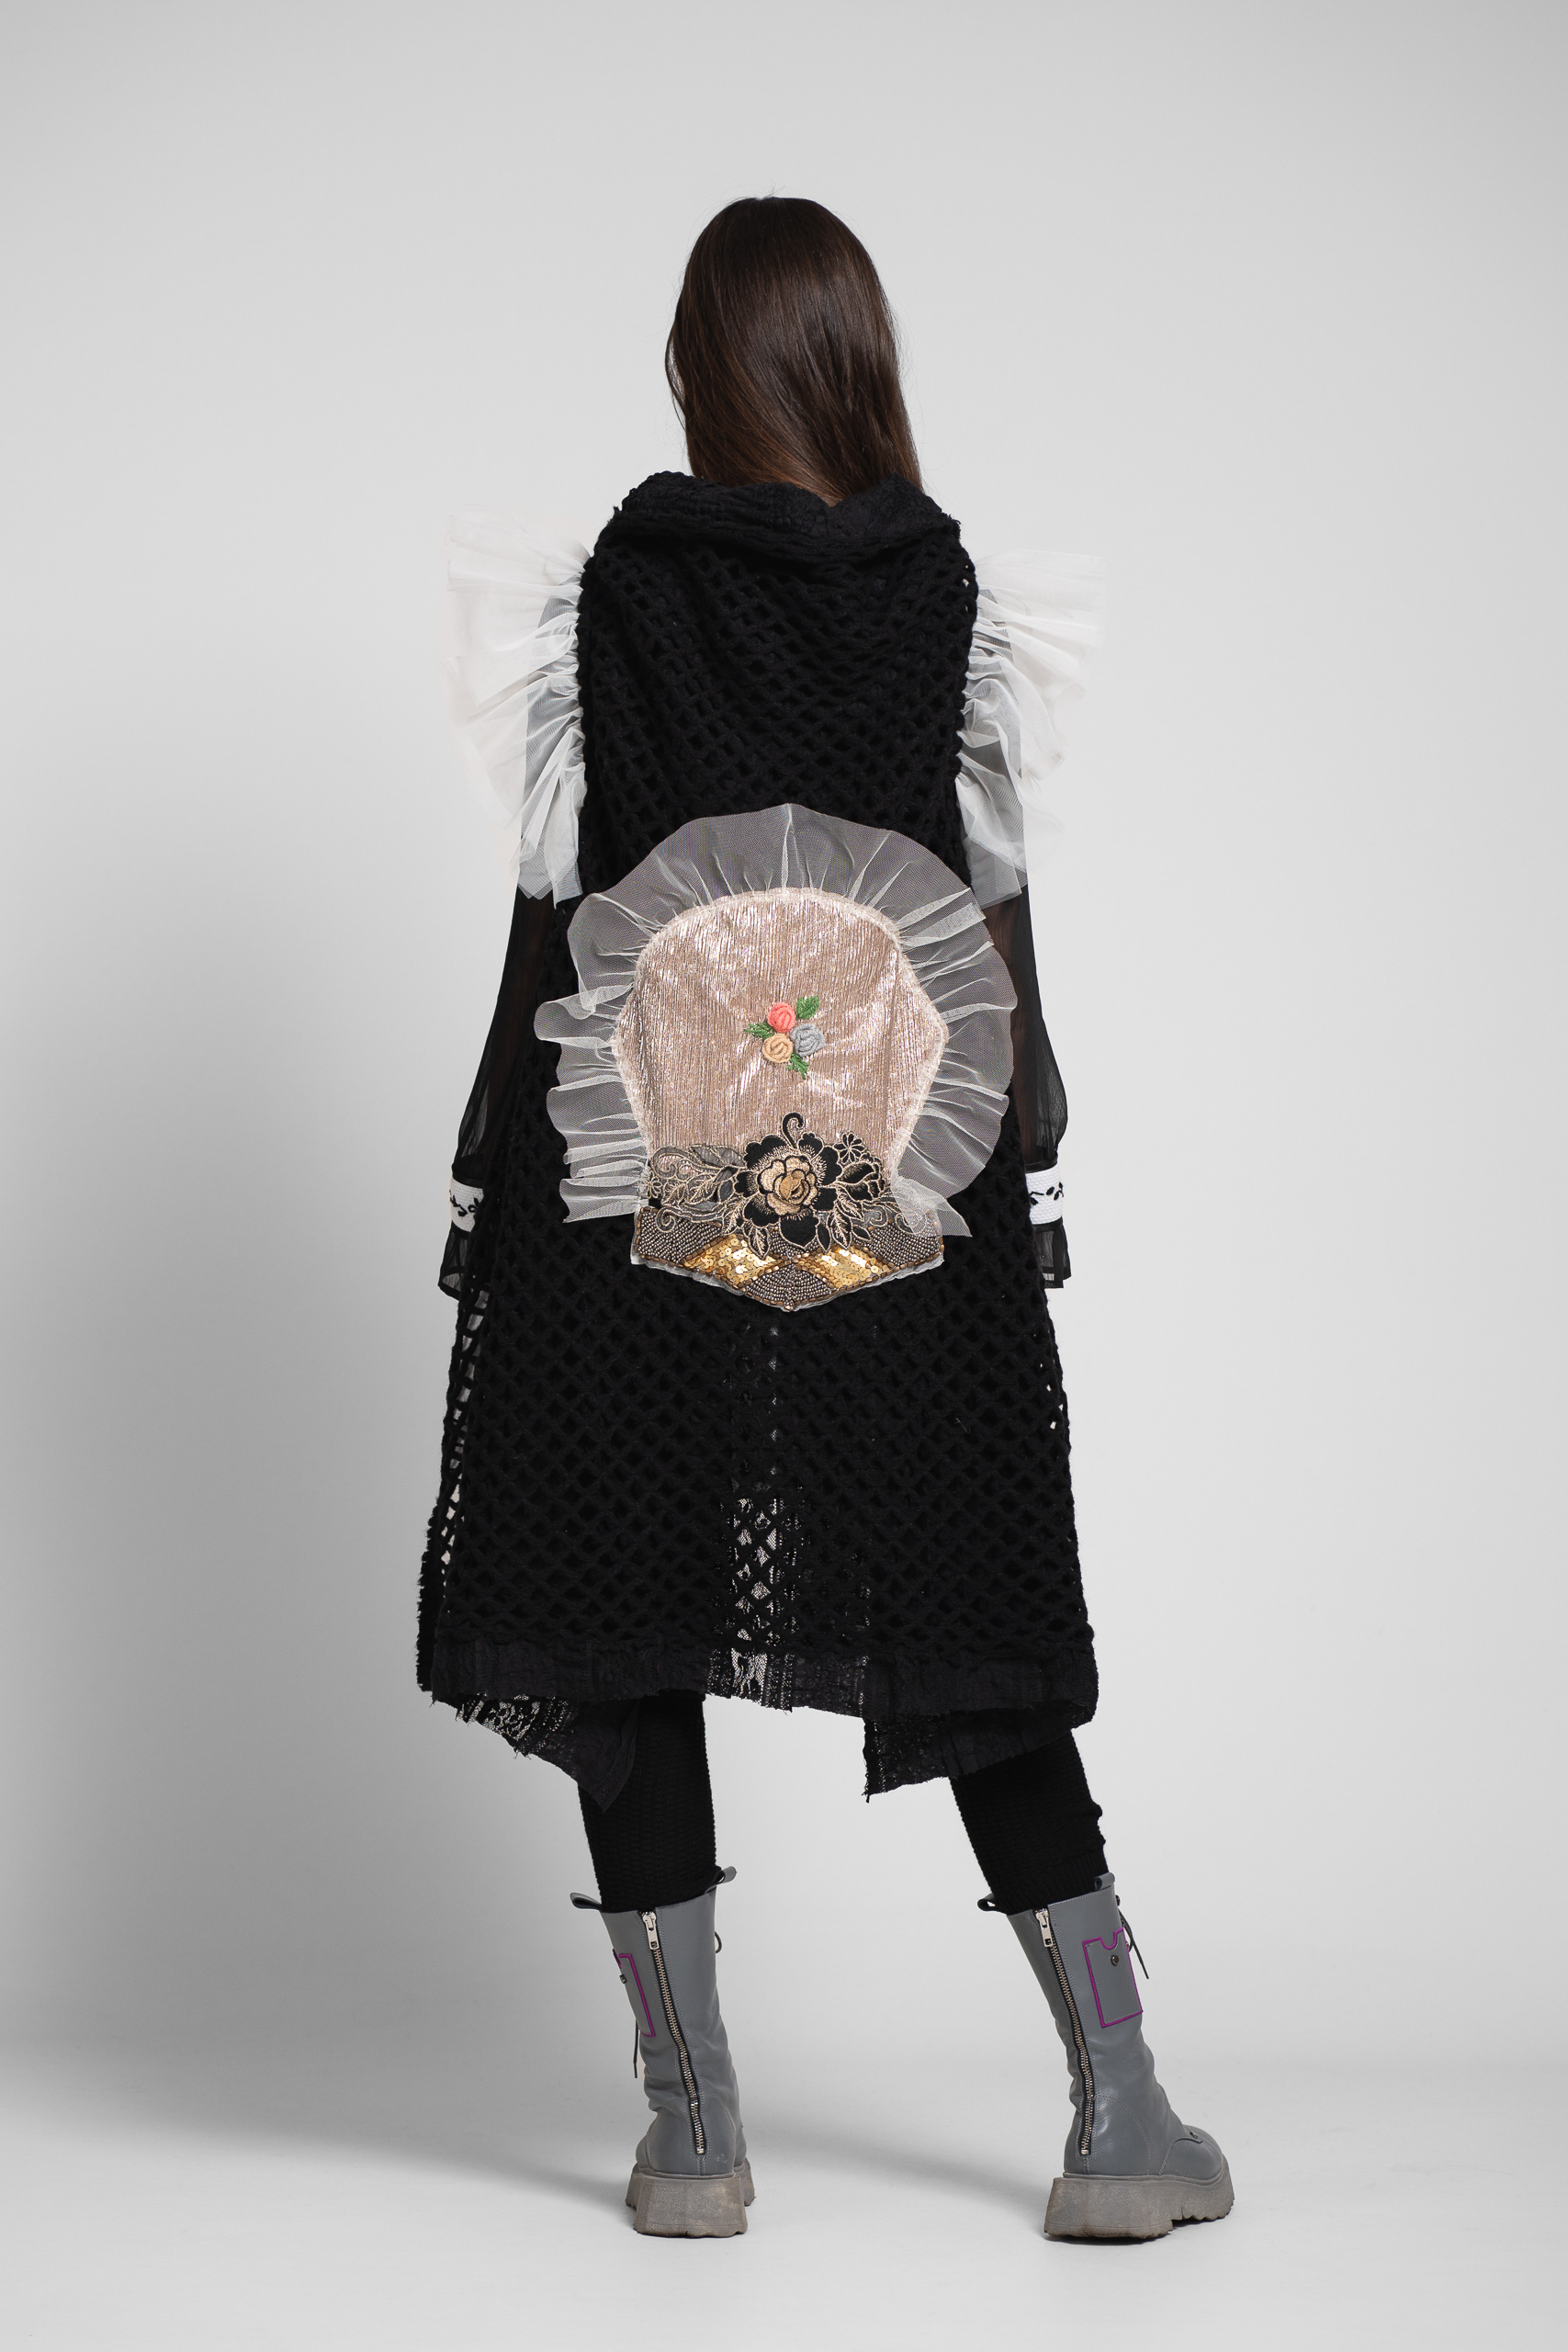 Vesta OISO statement neagra eleganta din tricot. Materiale naturale, design unicat, cu broderie si aplicatii handmade